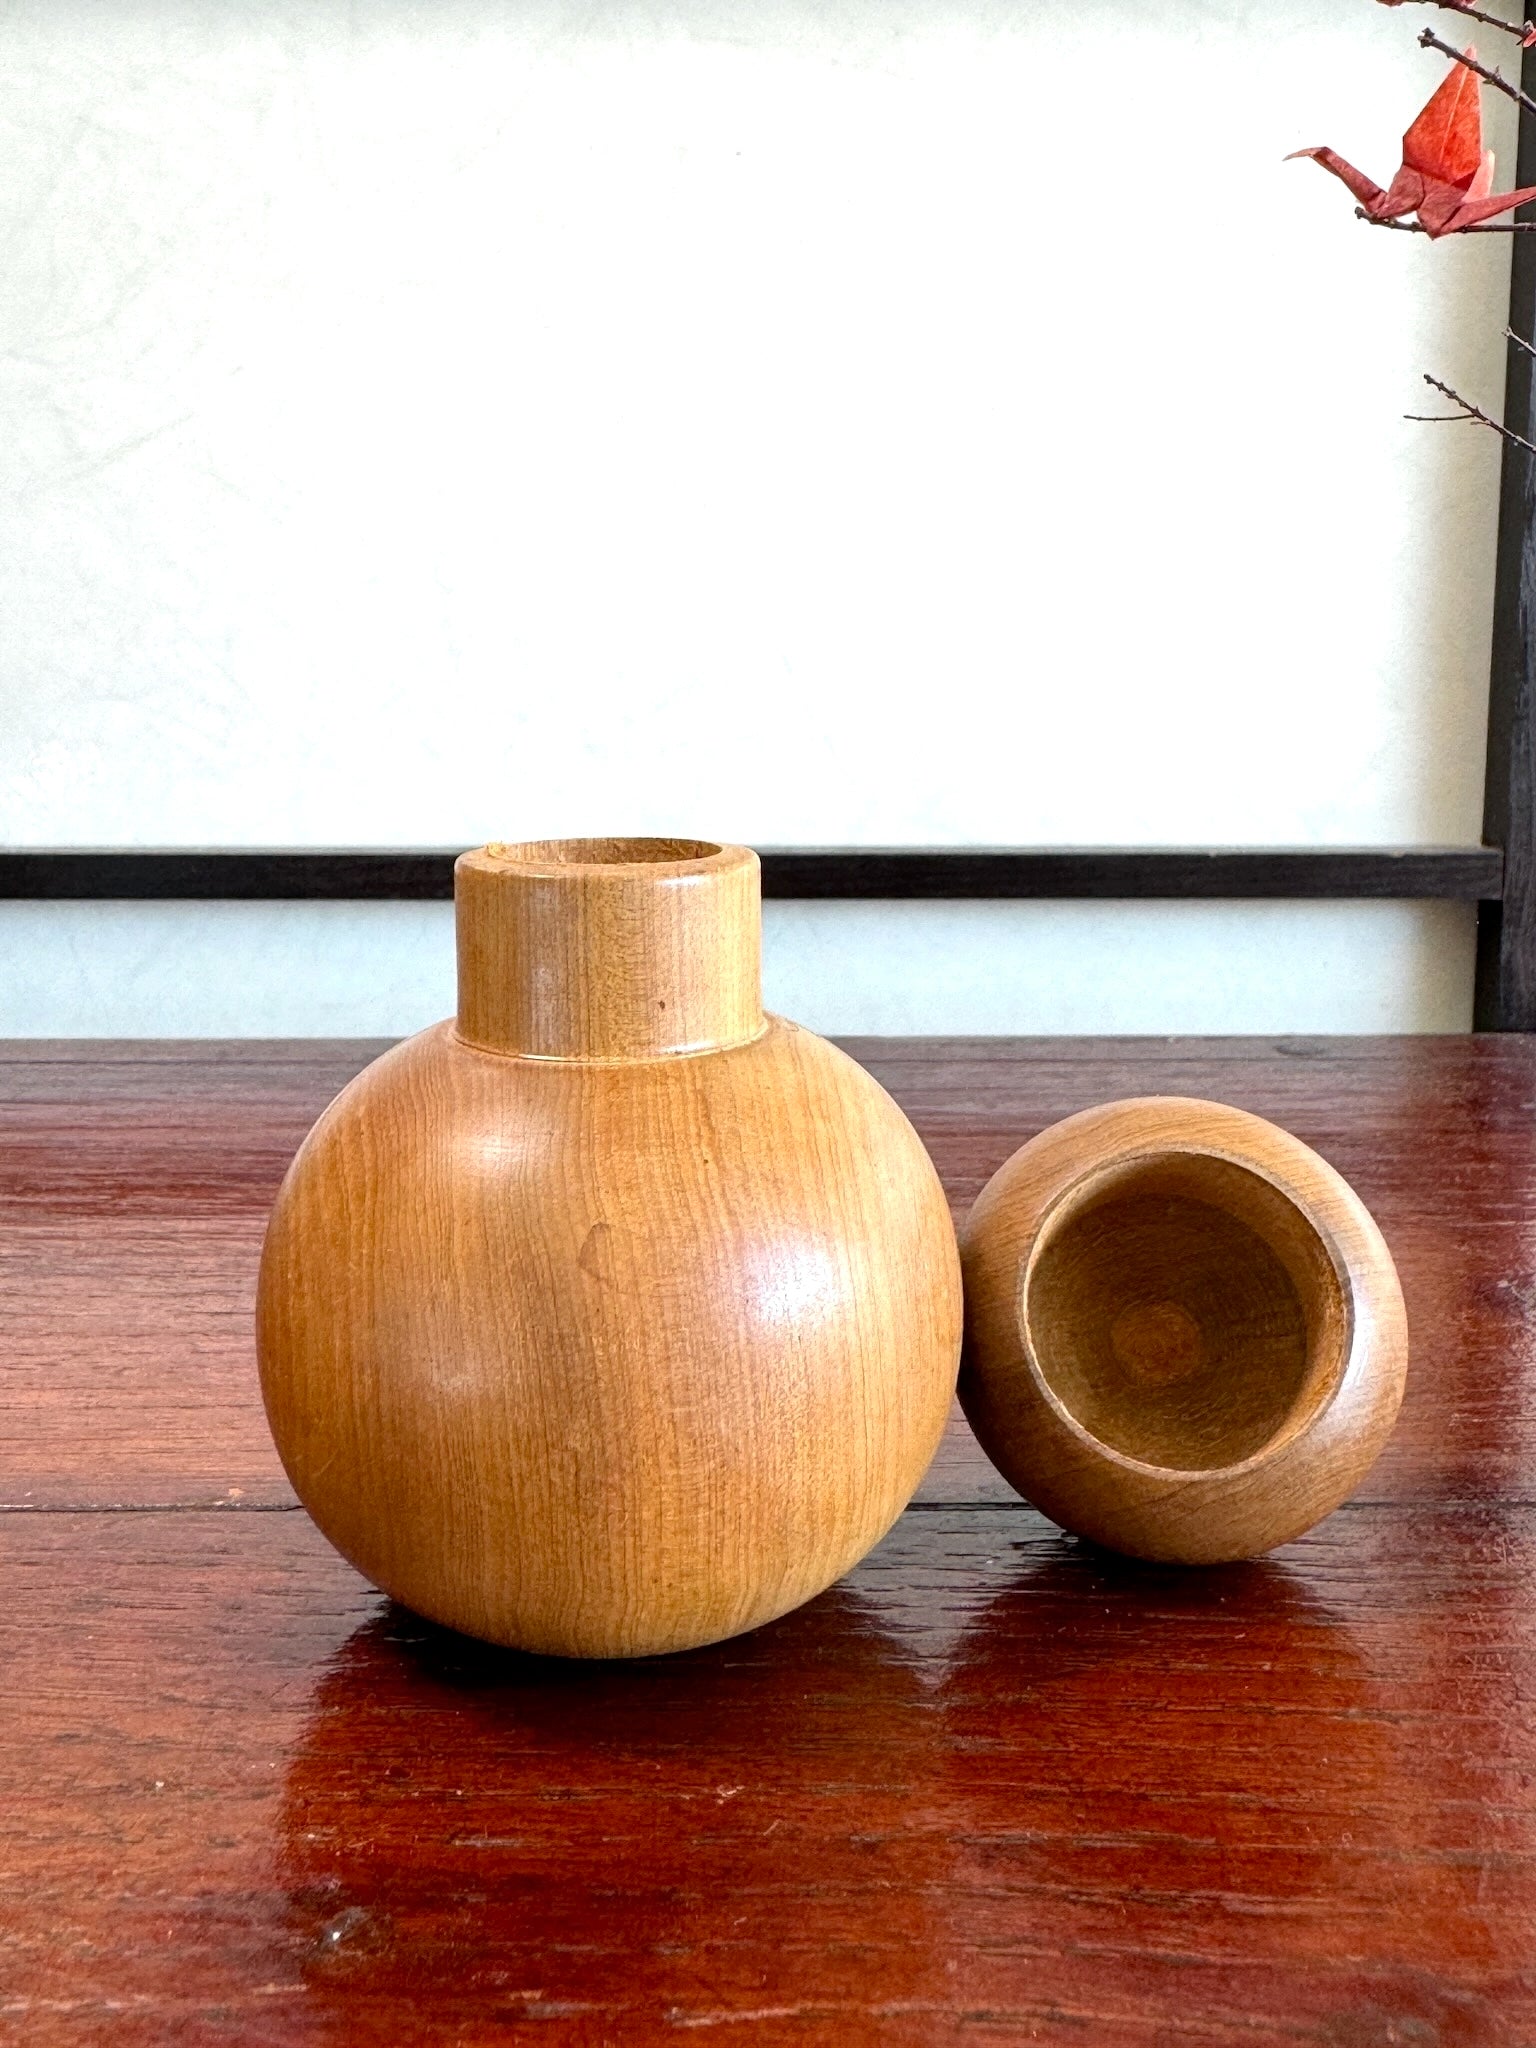 boite à épices en bois en forme de coloquinte, vue de profil